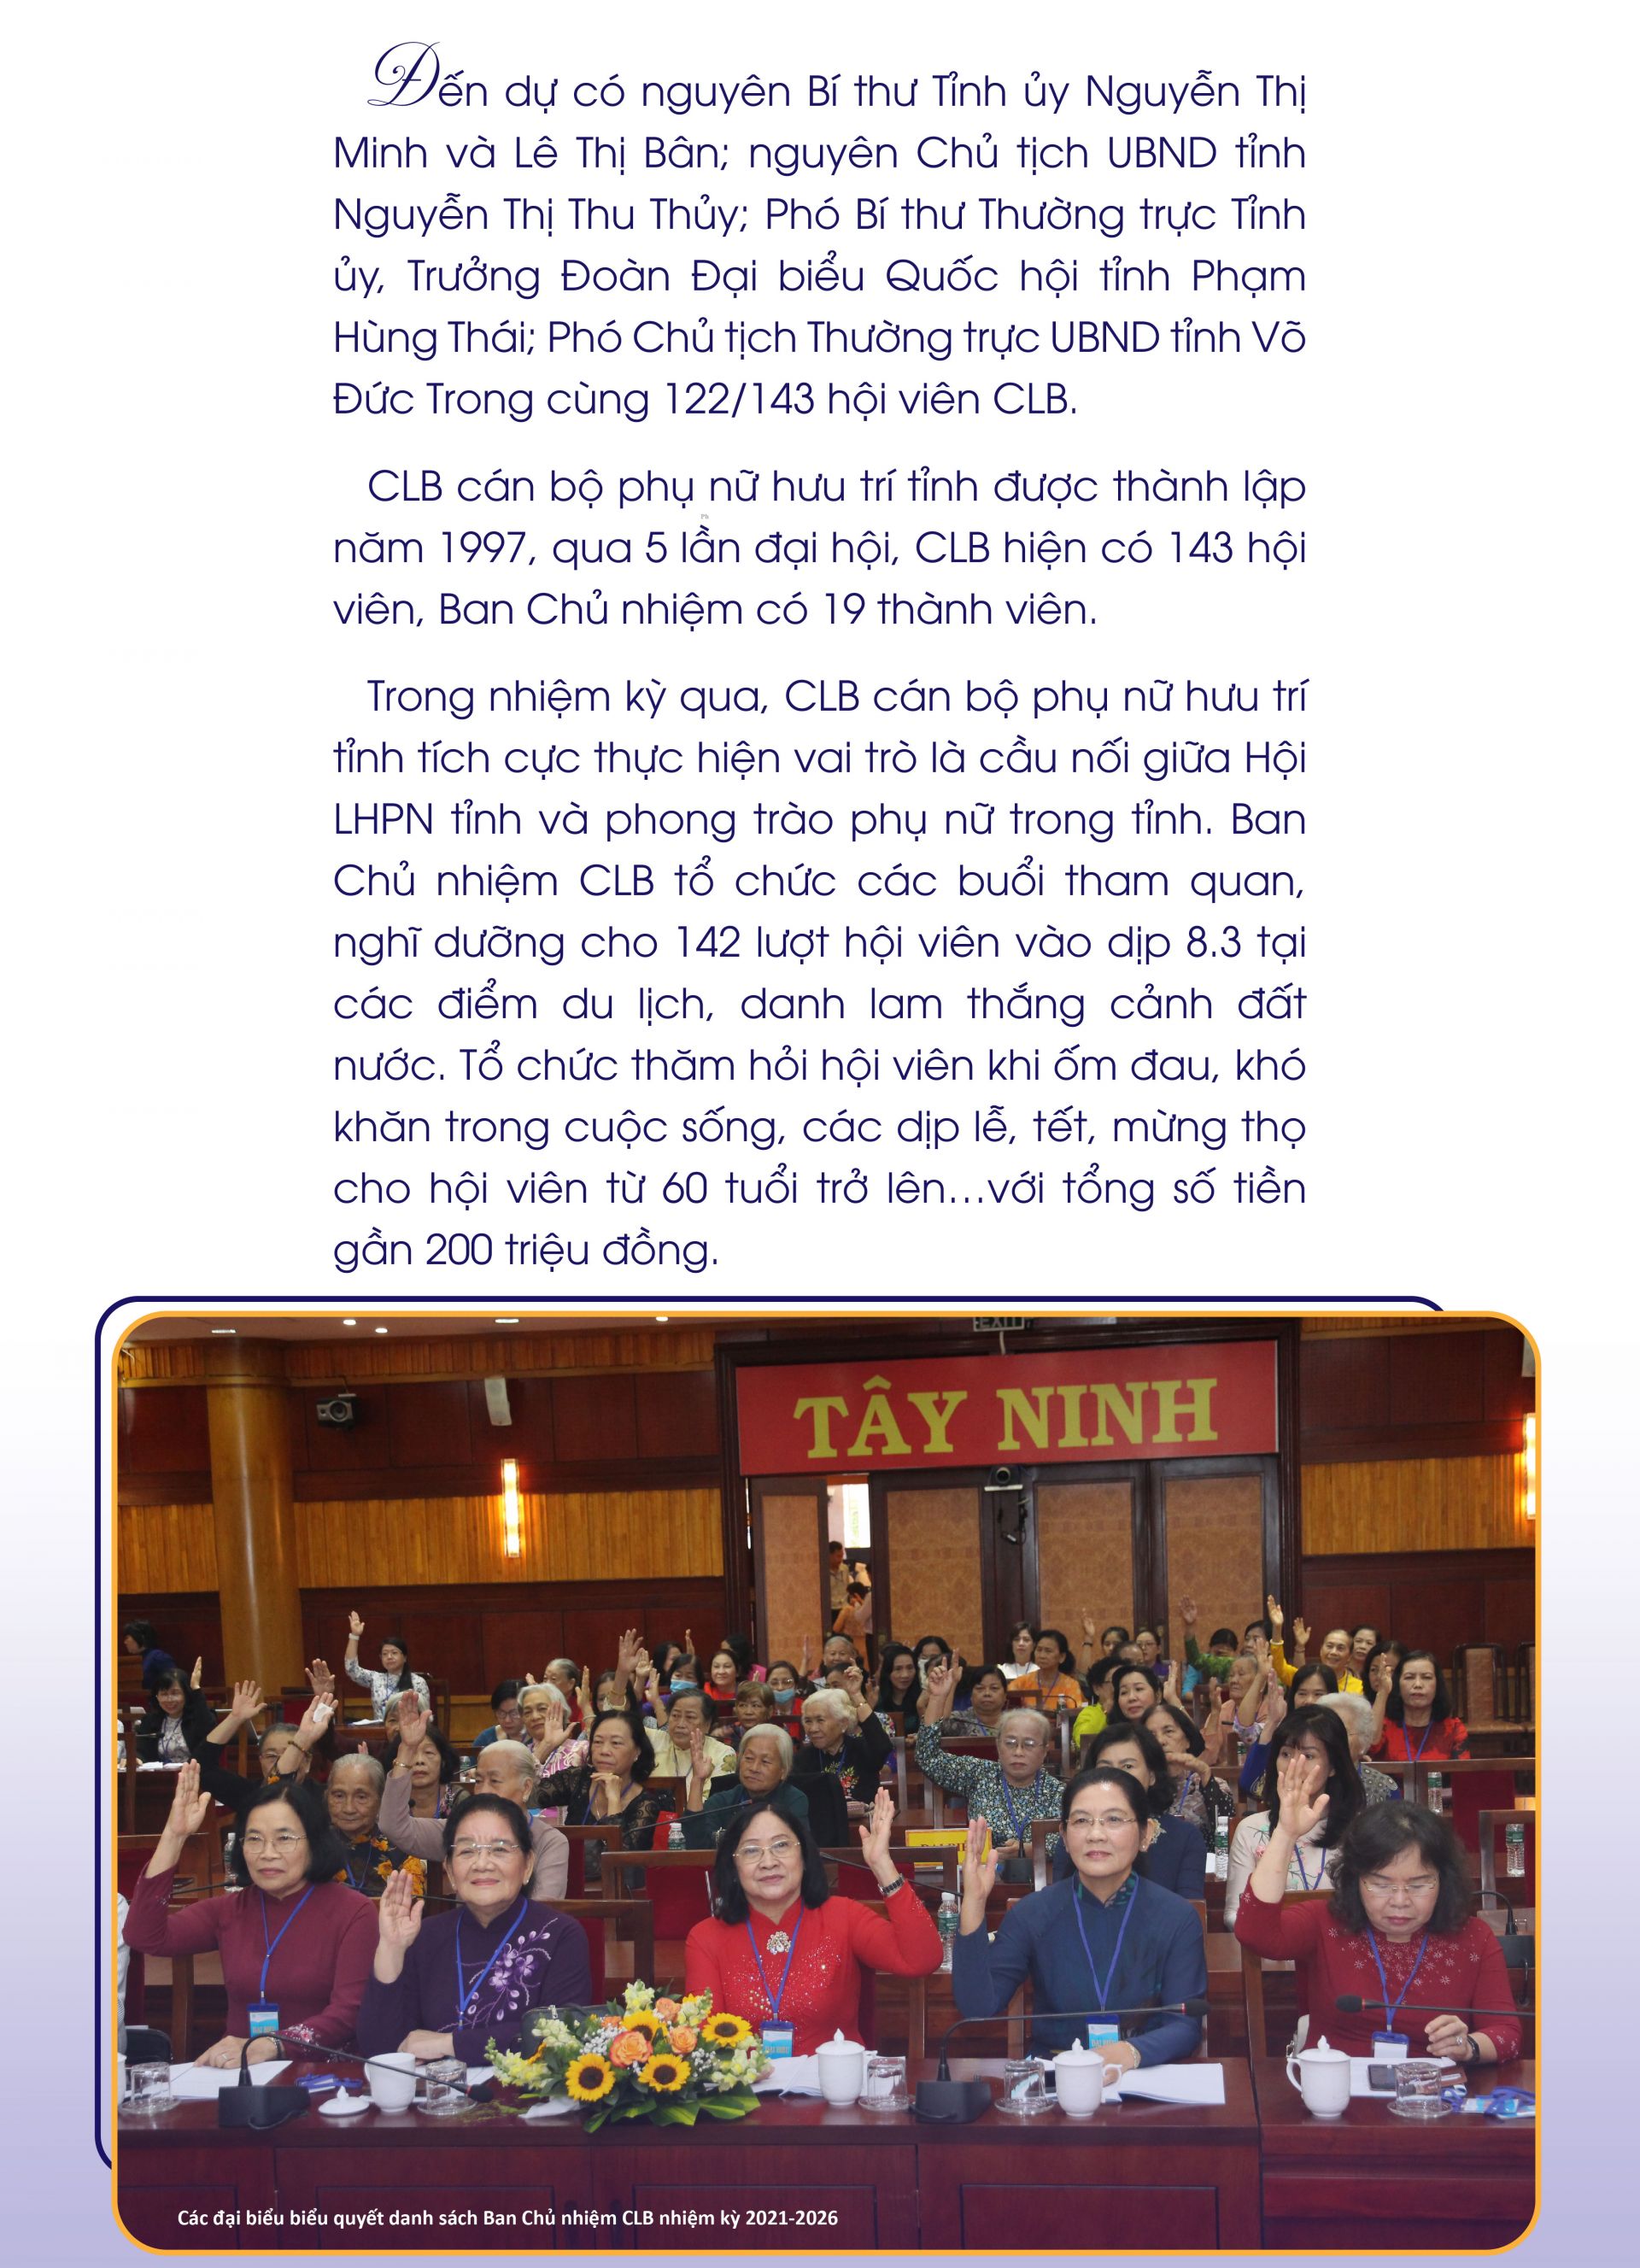 Bà Trần Thị Ngọc Thu đắc cử Chủ nhiệm CLB cán bộ phụ nữ hưu trí